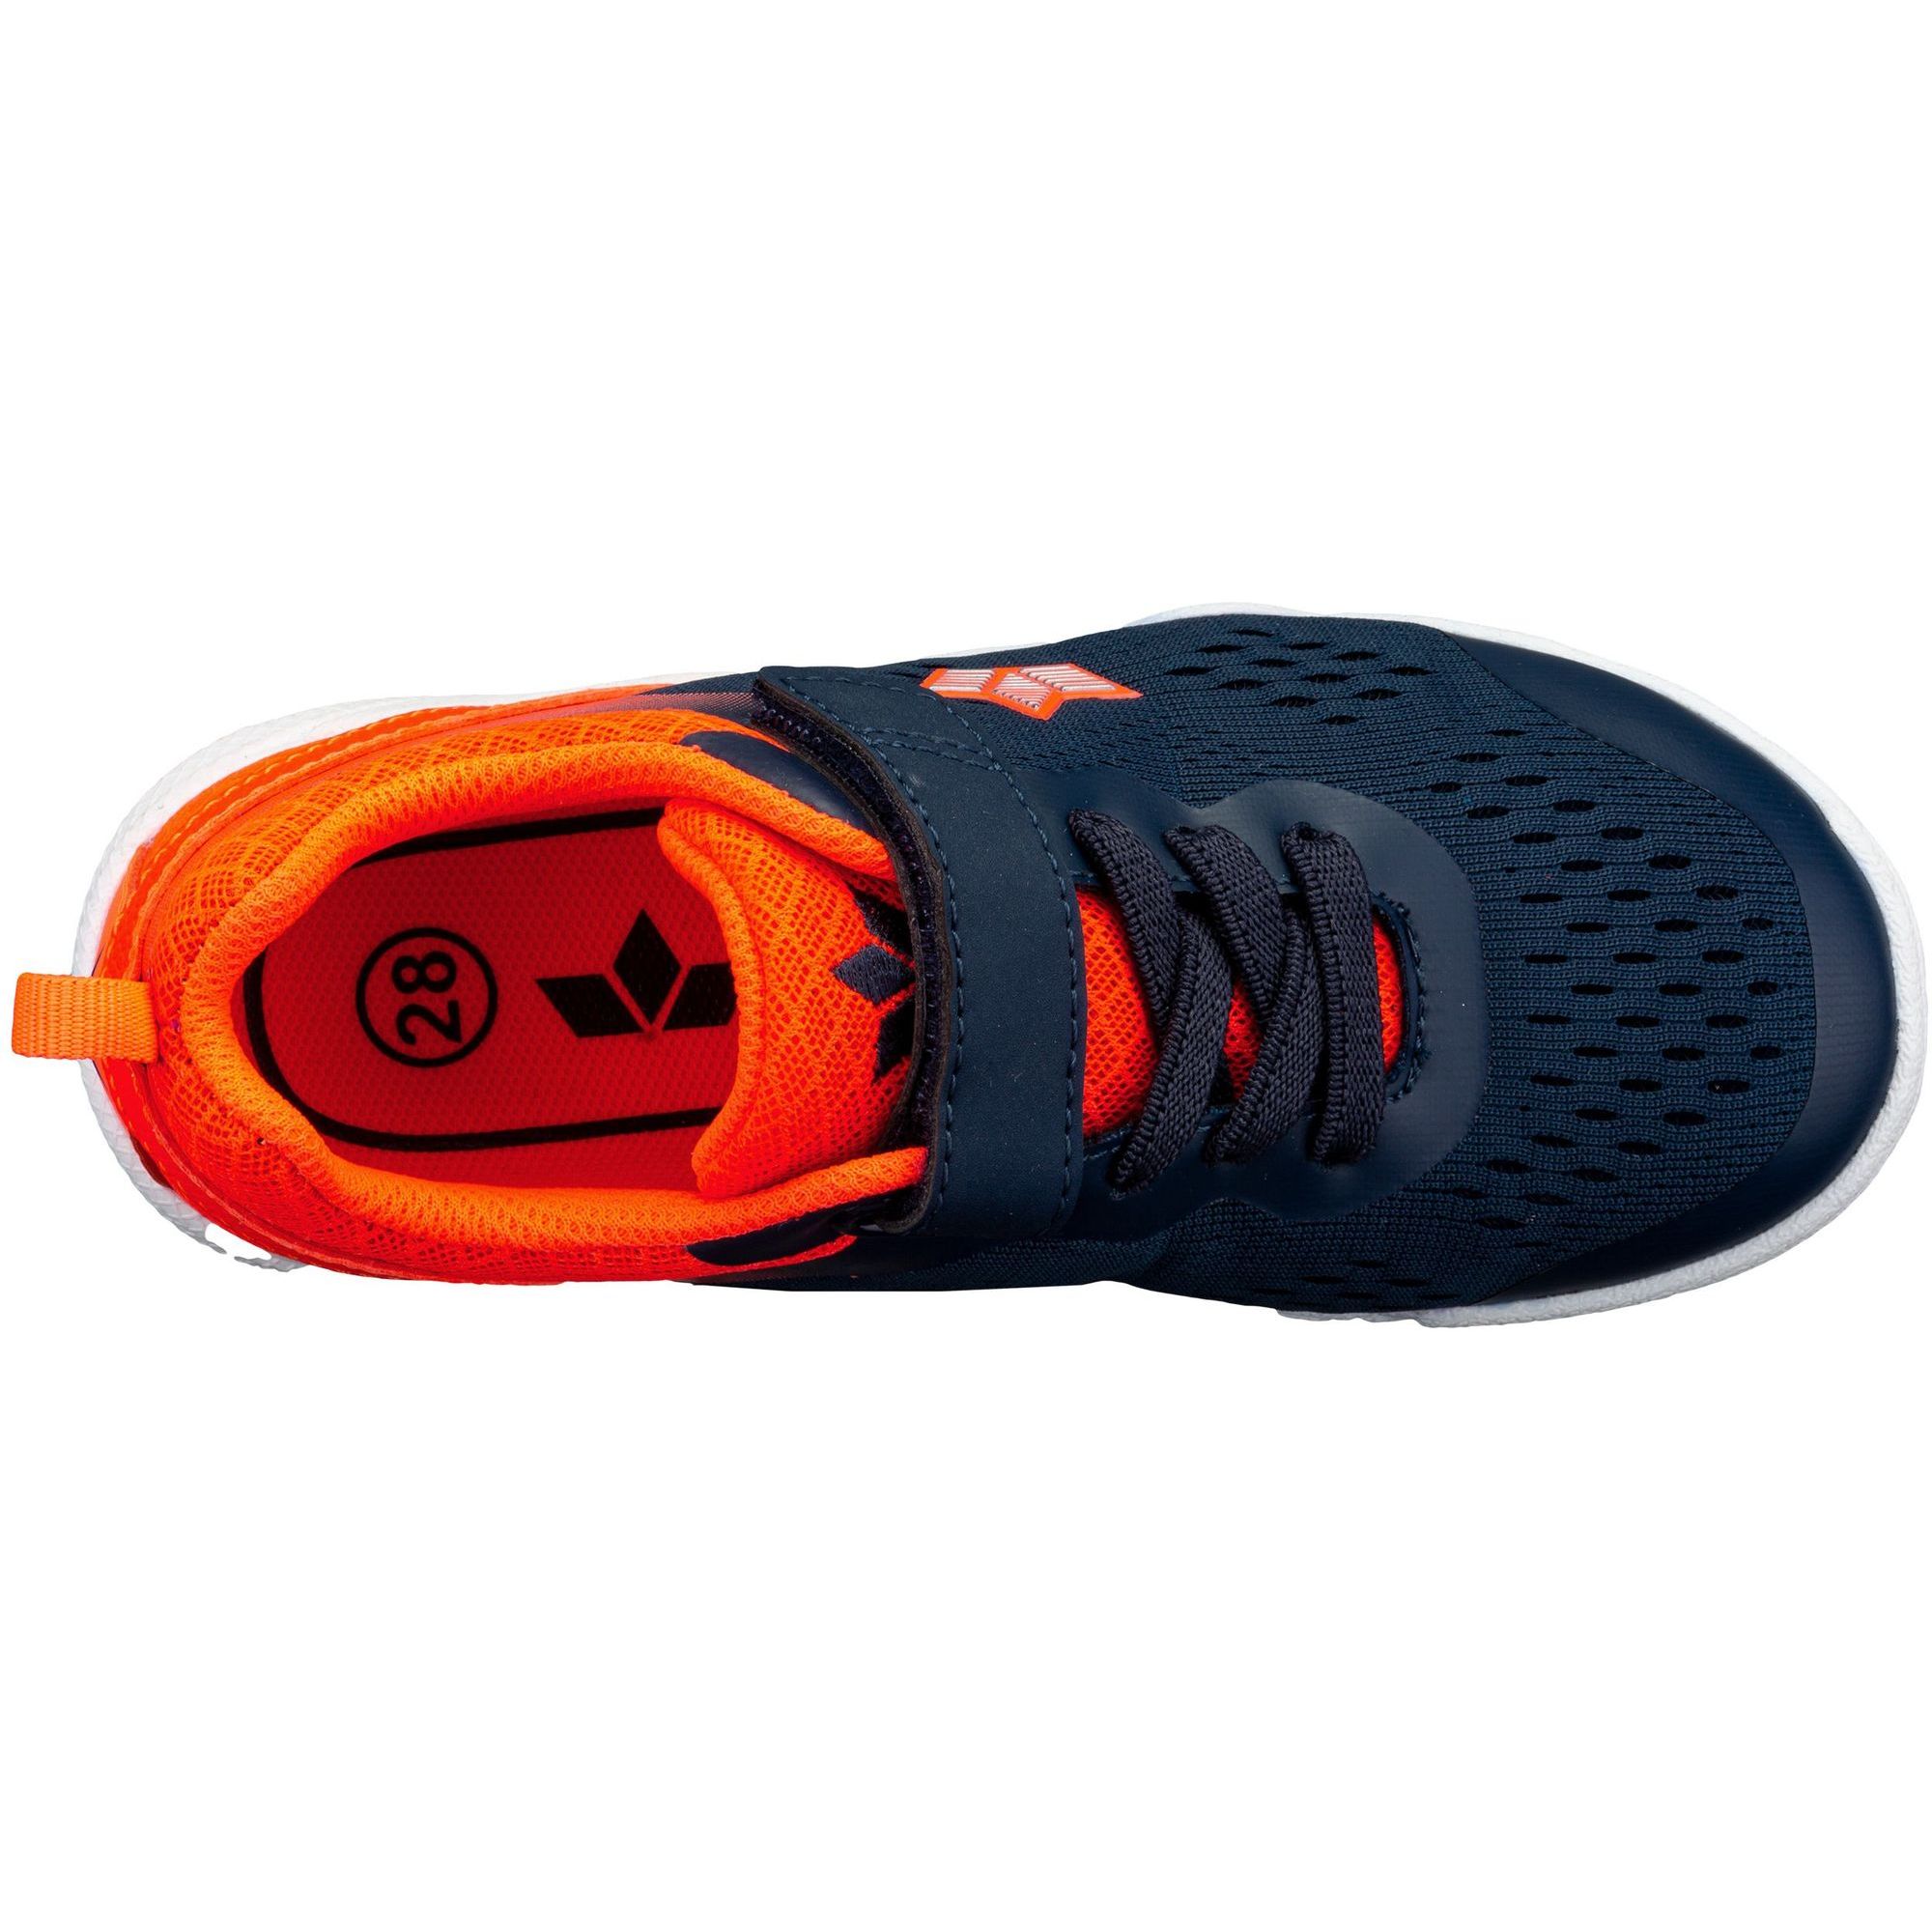 marine/orange VS Lico Key Klettschuhe kaufen Berger 360876 bei jetzt